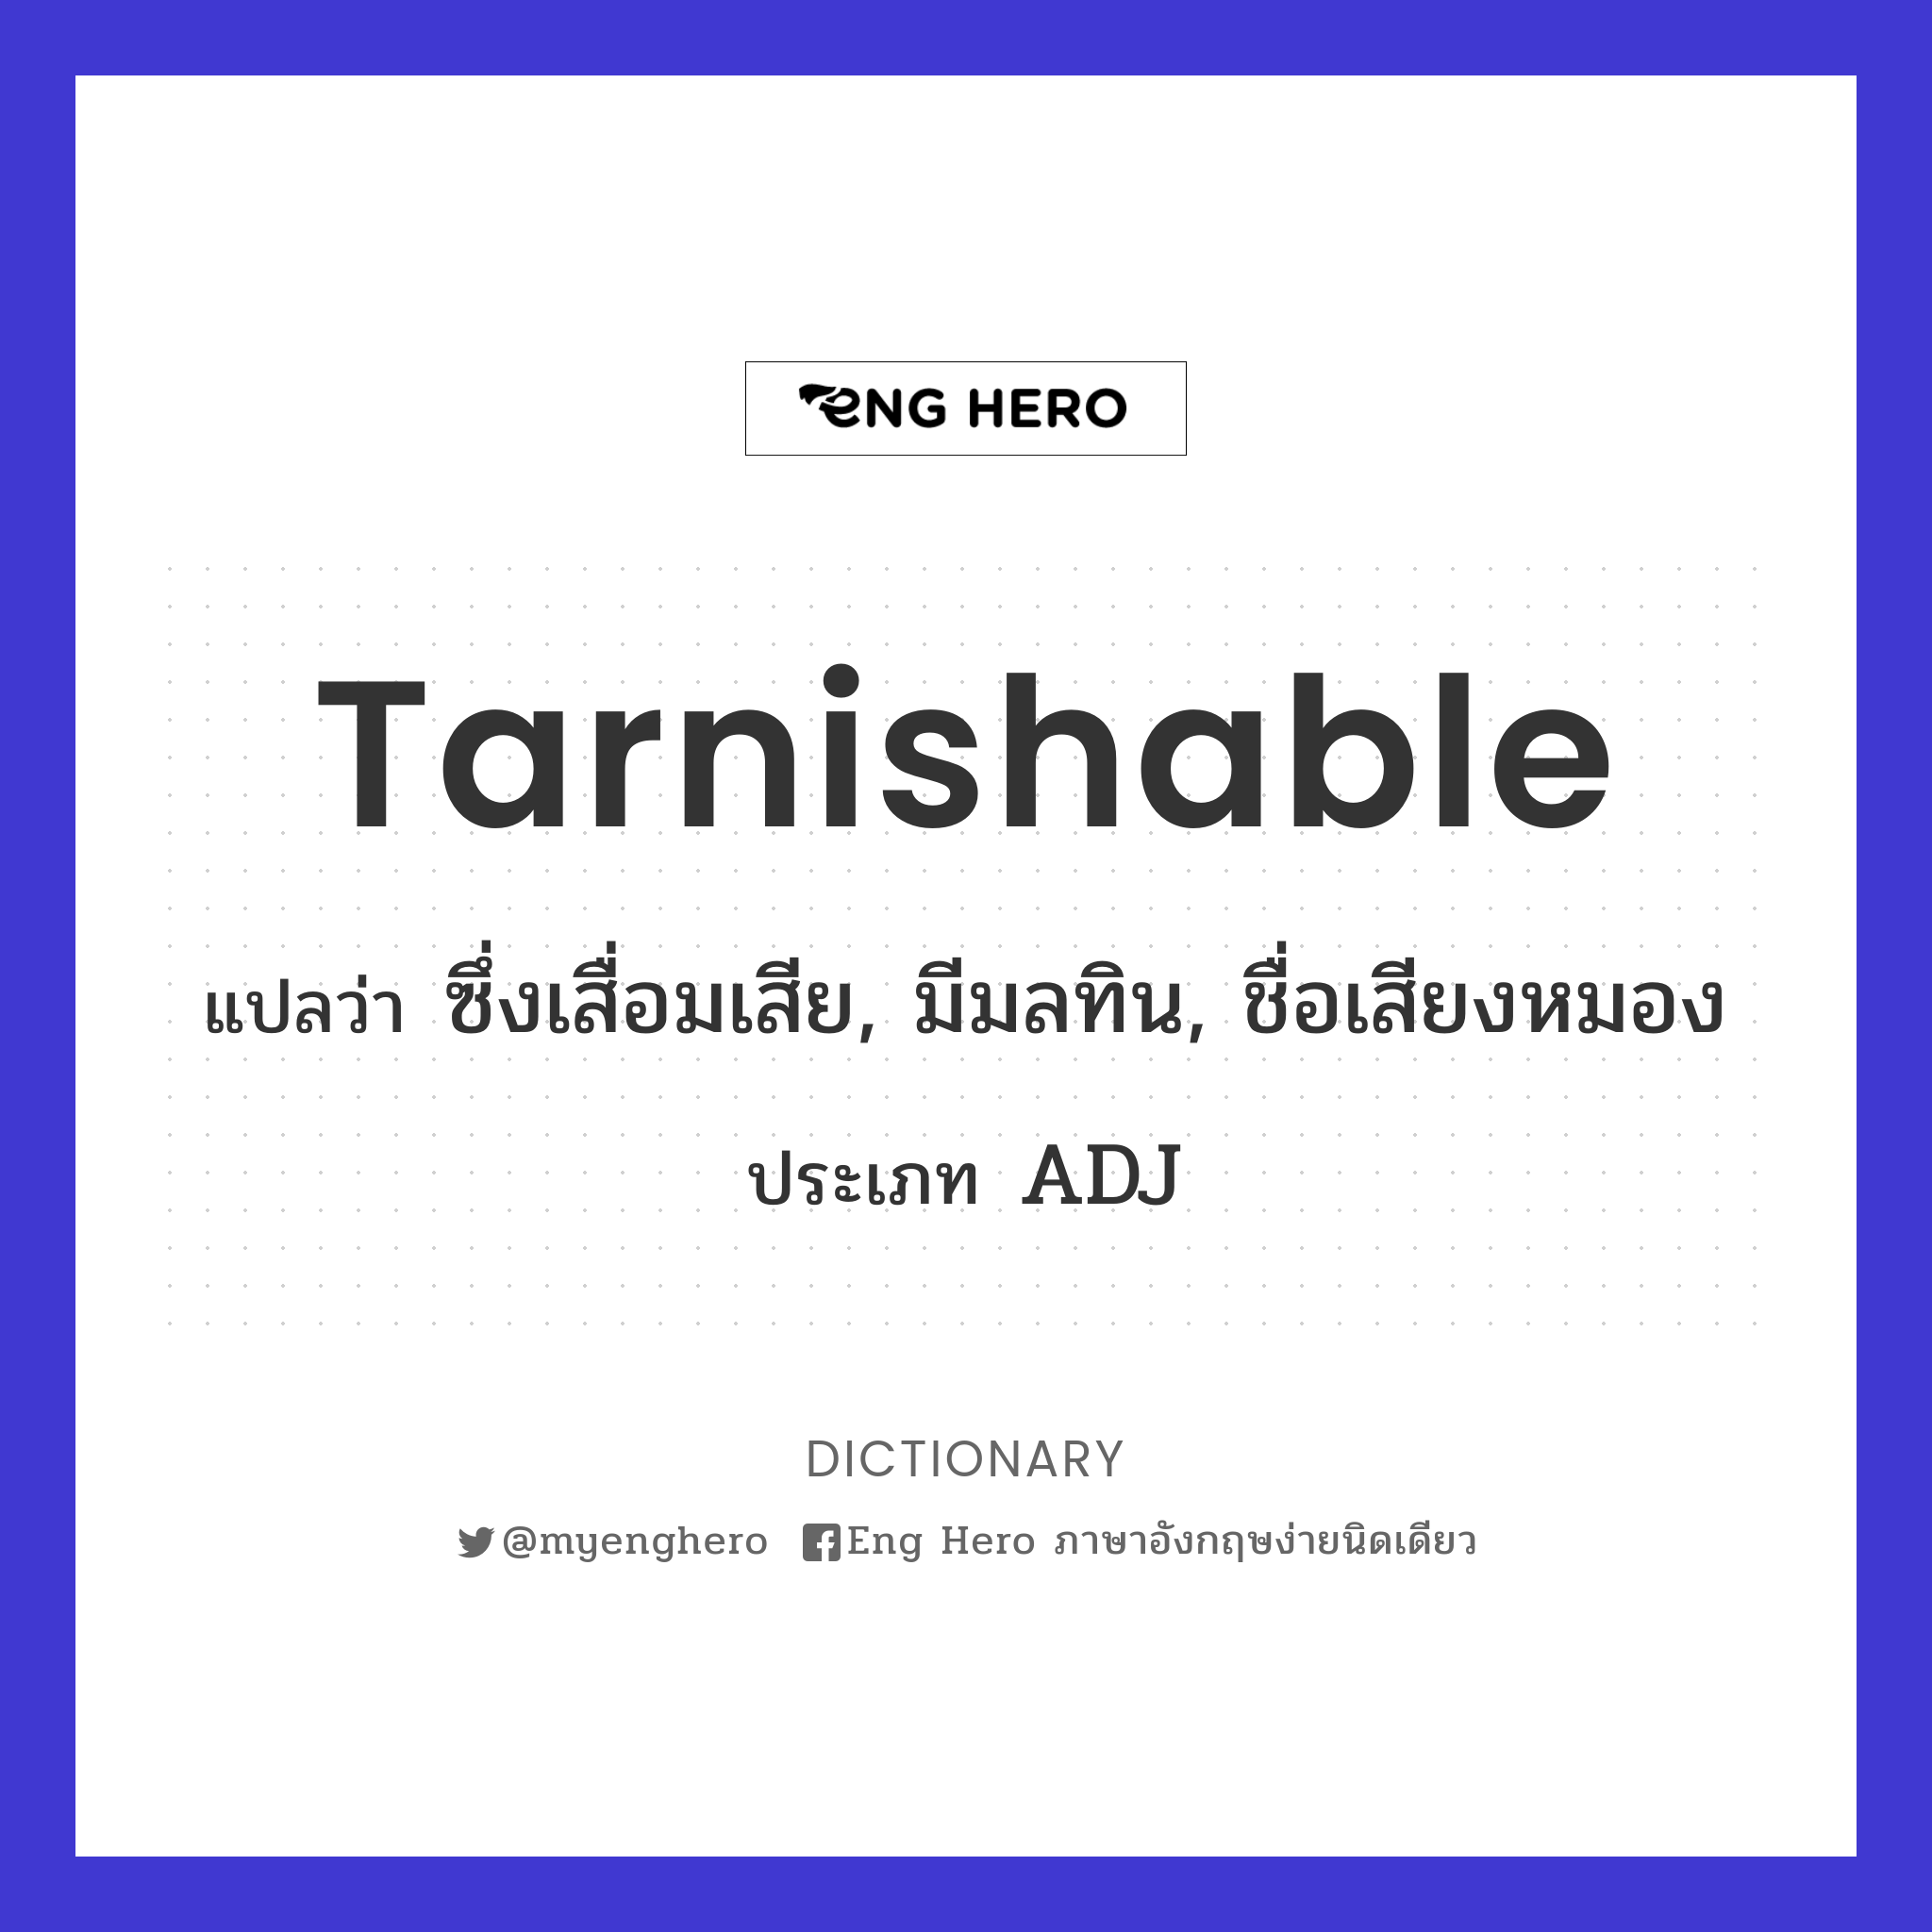 tarnishable